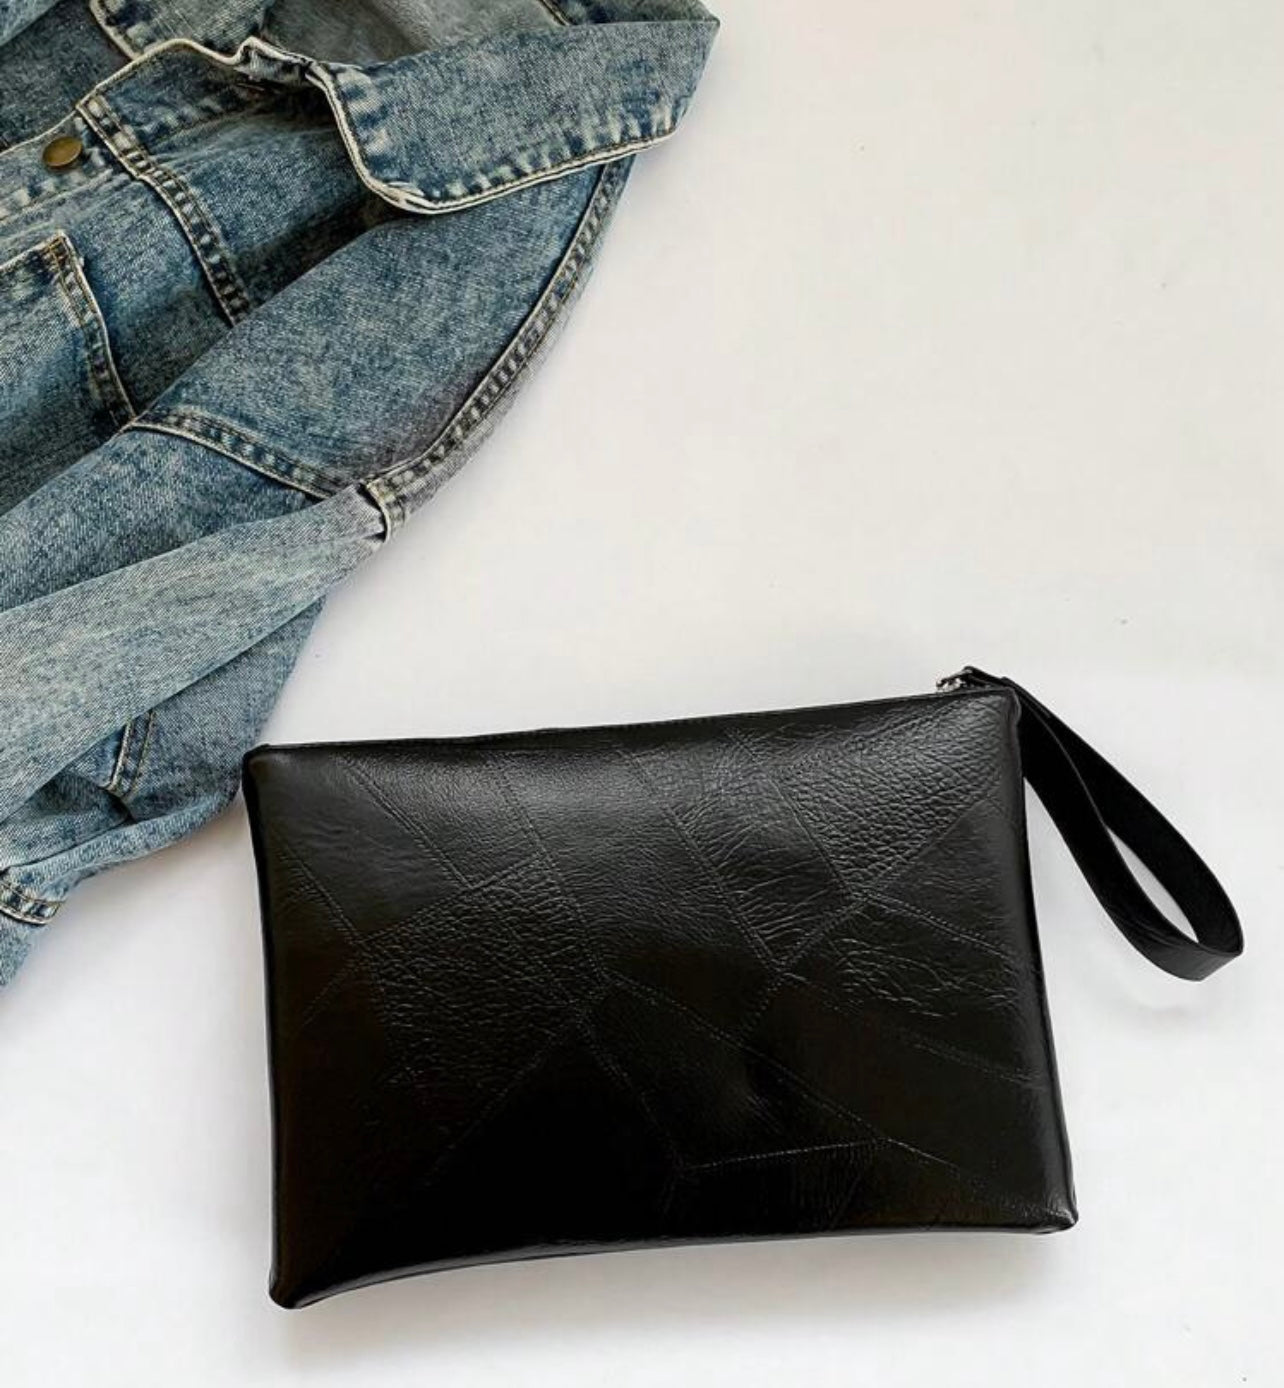 “Get Rigged Rivet Inlay Handbag”